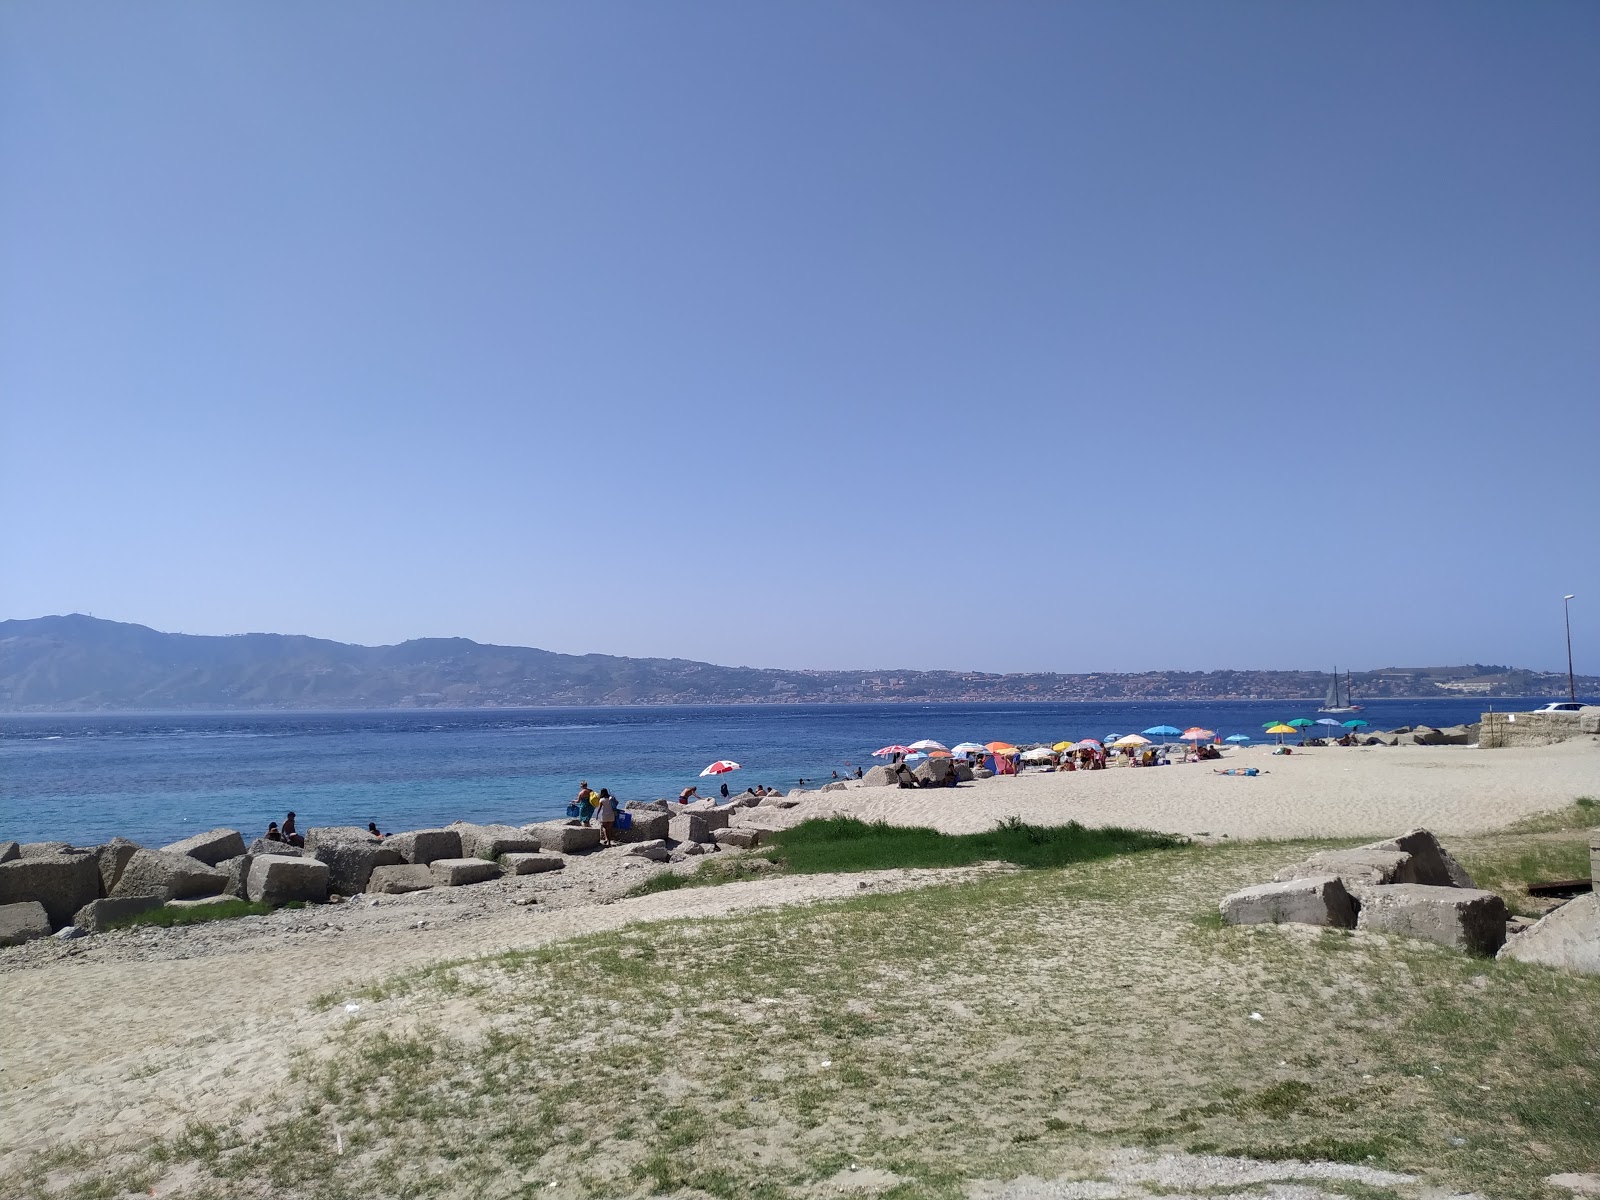 Spiaggia di via Lungomare'in fotoğrafı küçük koylar ile birlikte